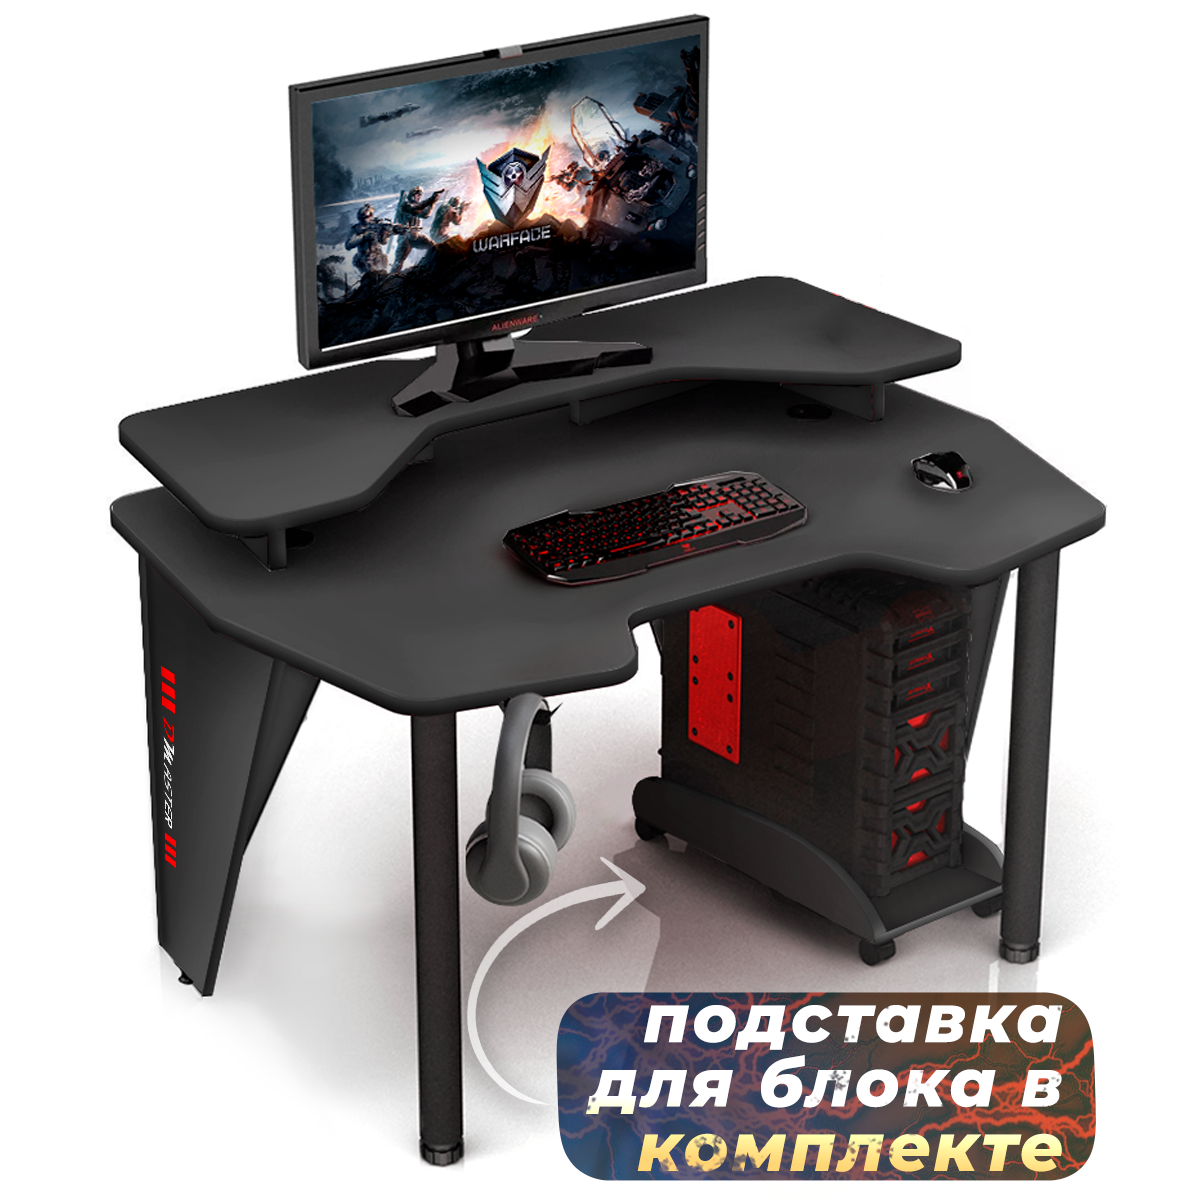 Геймерский компьютерный игровой стол и подставка под блок графит / дэн-мастер / офисный, письменный стол для компьютера пк